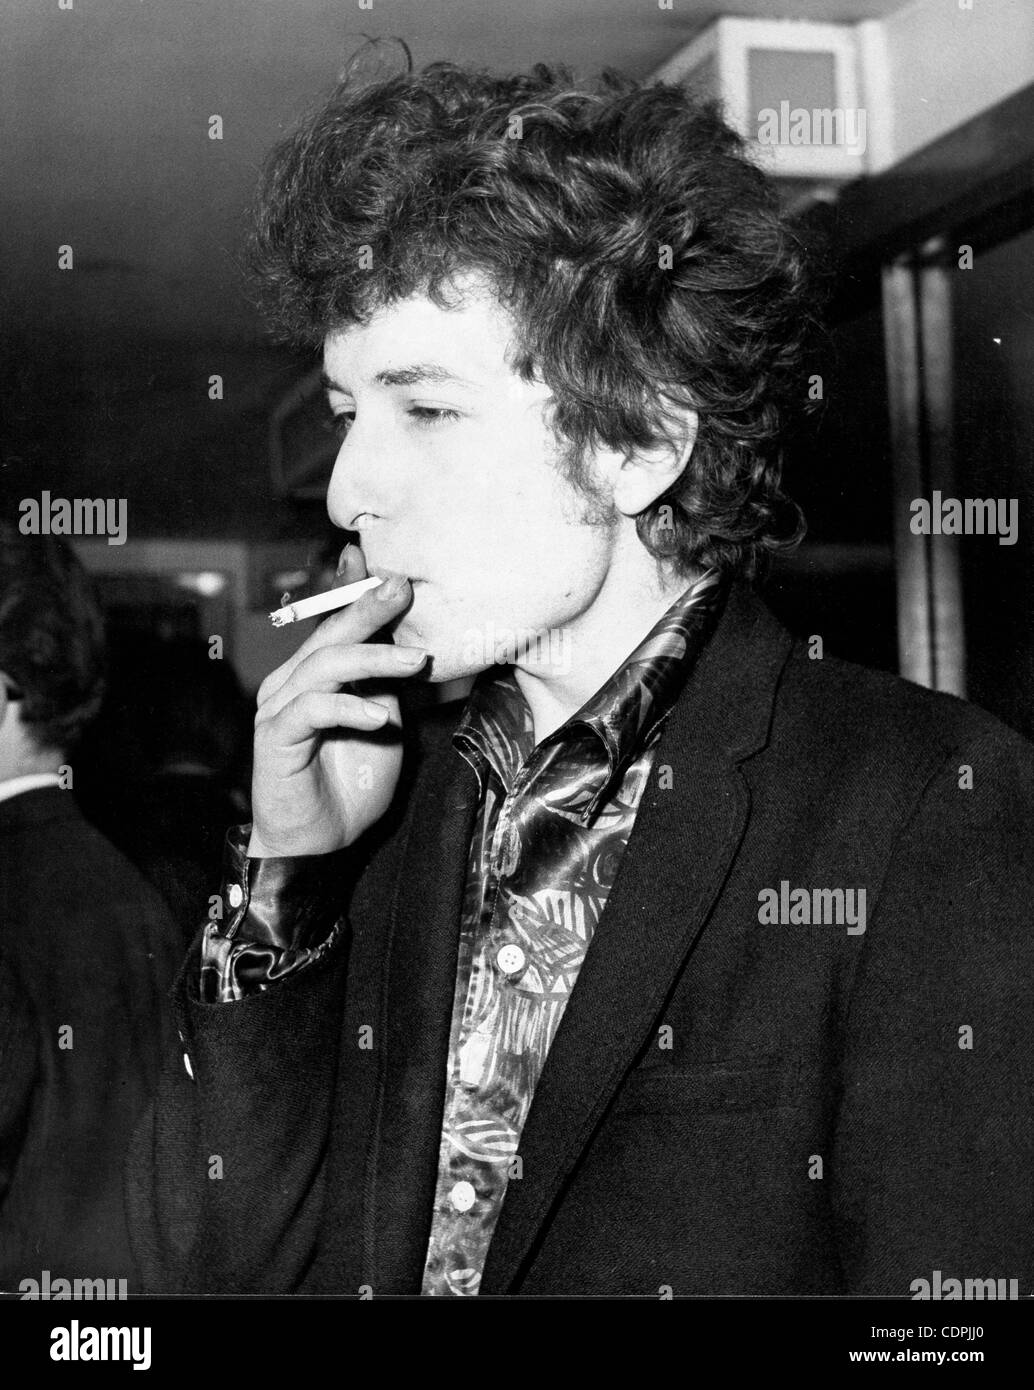 27. April 1965 - London, England, U.K - Folk-Sänger BOB DYLAN eine Zigarette raucht. Dylan ist in der Stadt für seine britischen Tour im The Savoy Hotel. (Kredit-Bild: © KEYSTONE Pictures/ZUMAPRESS.com) Stockfoto